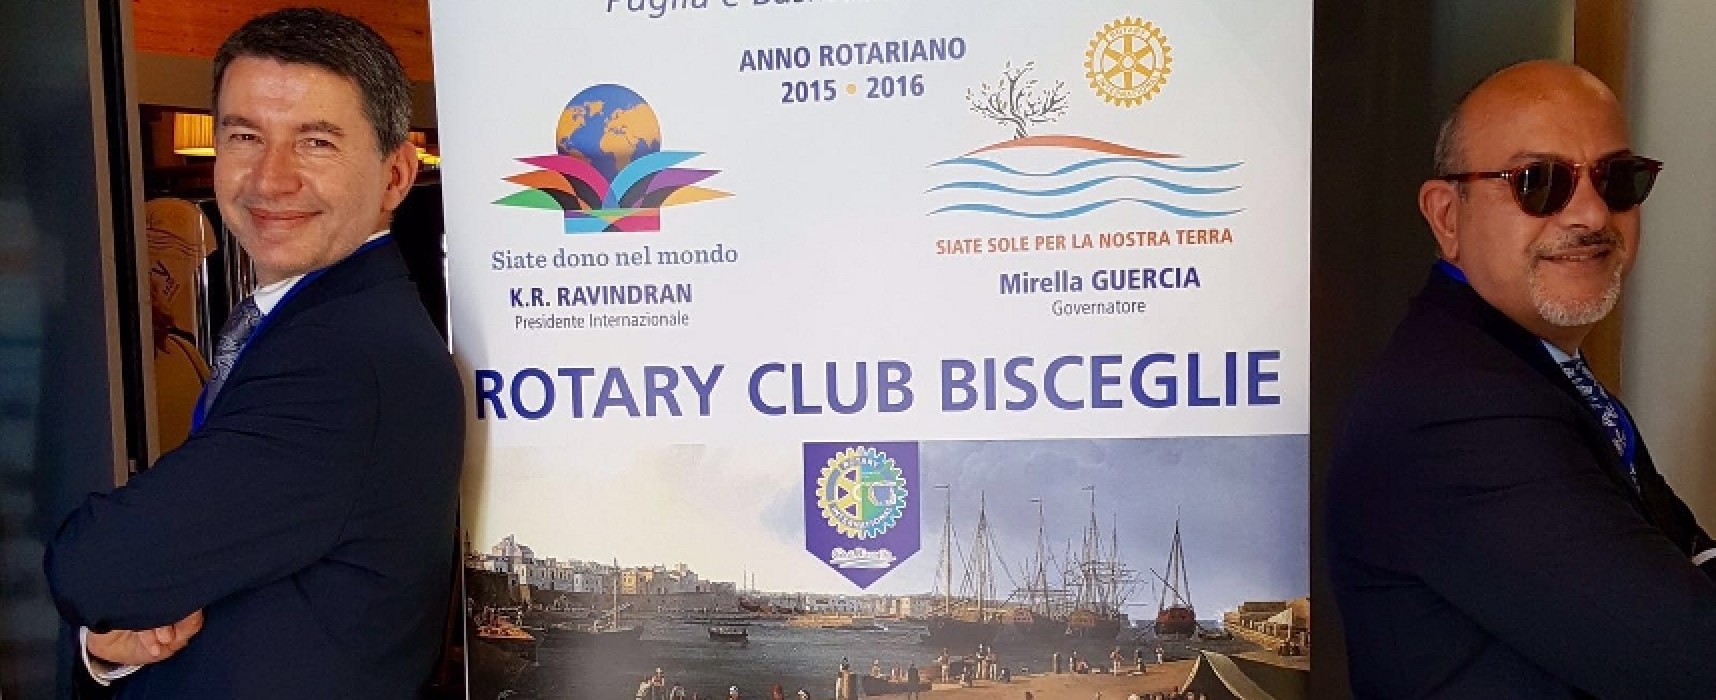 Rotary Club, questa sera la cerimonia di “Passaggio del Martelletto”